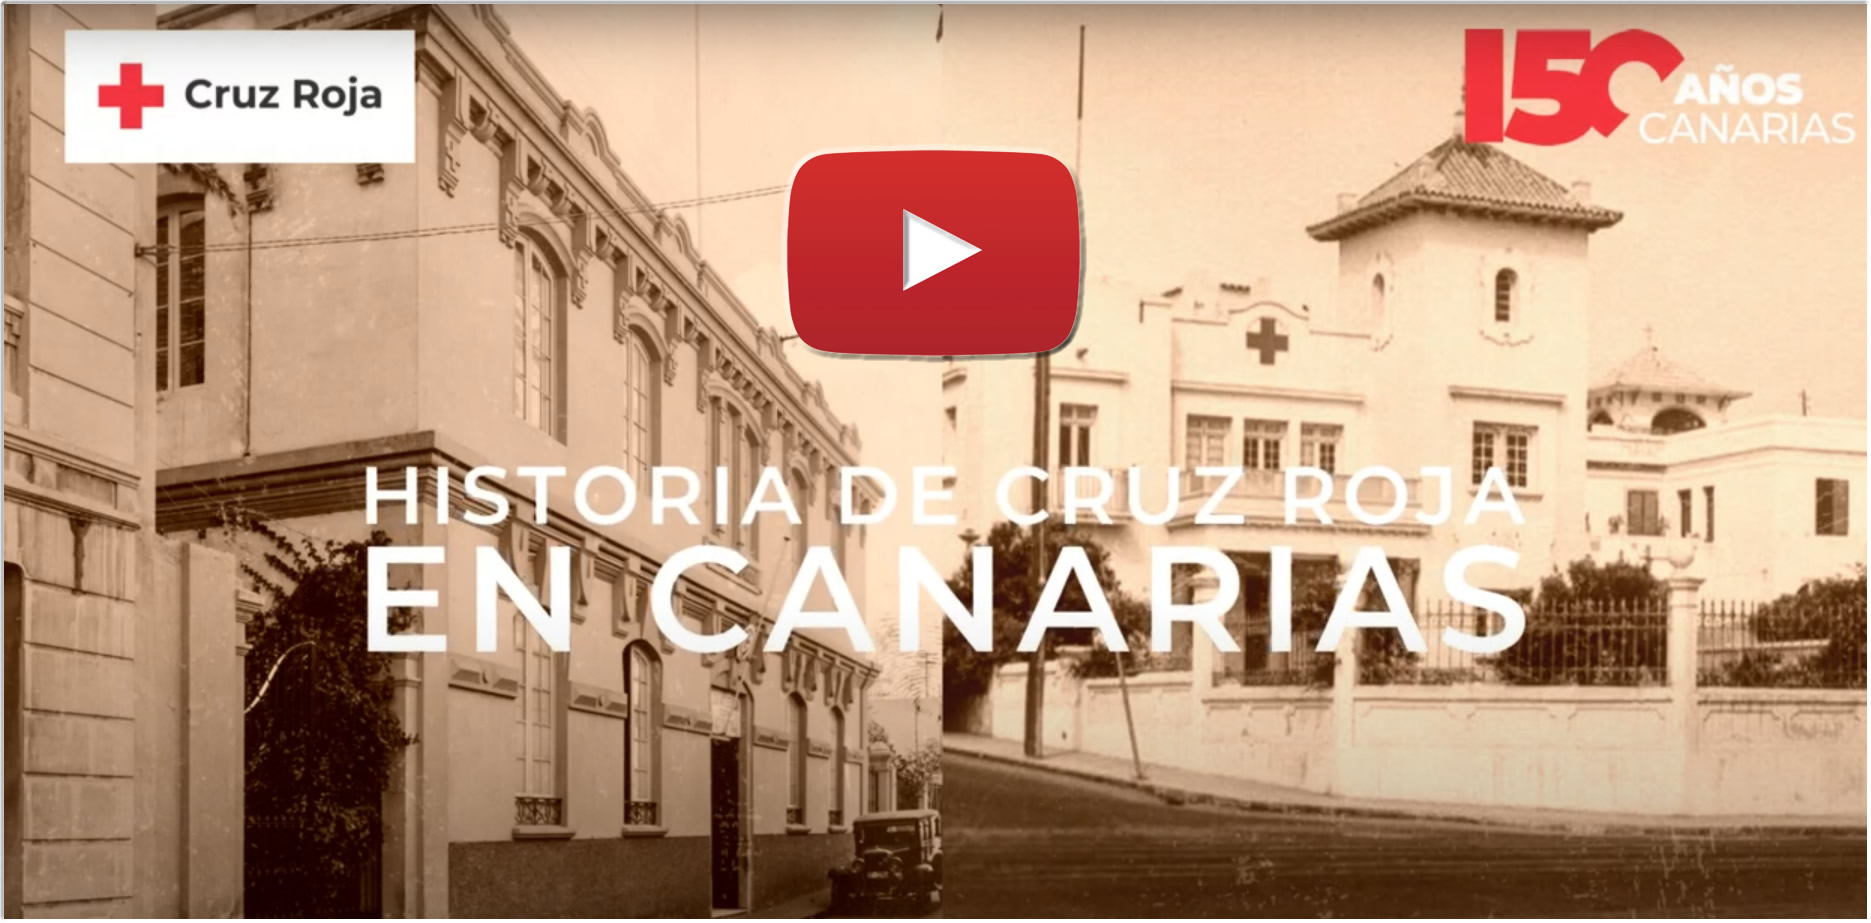 Video del 150 aniversario de Cruz Roja en Canarias